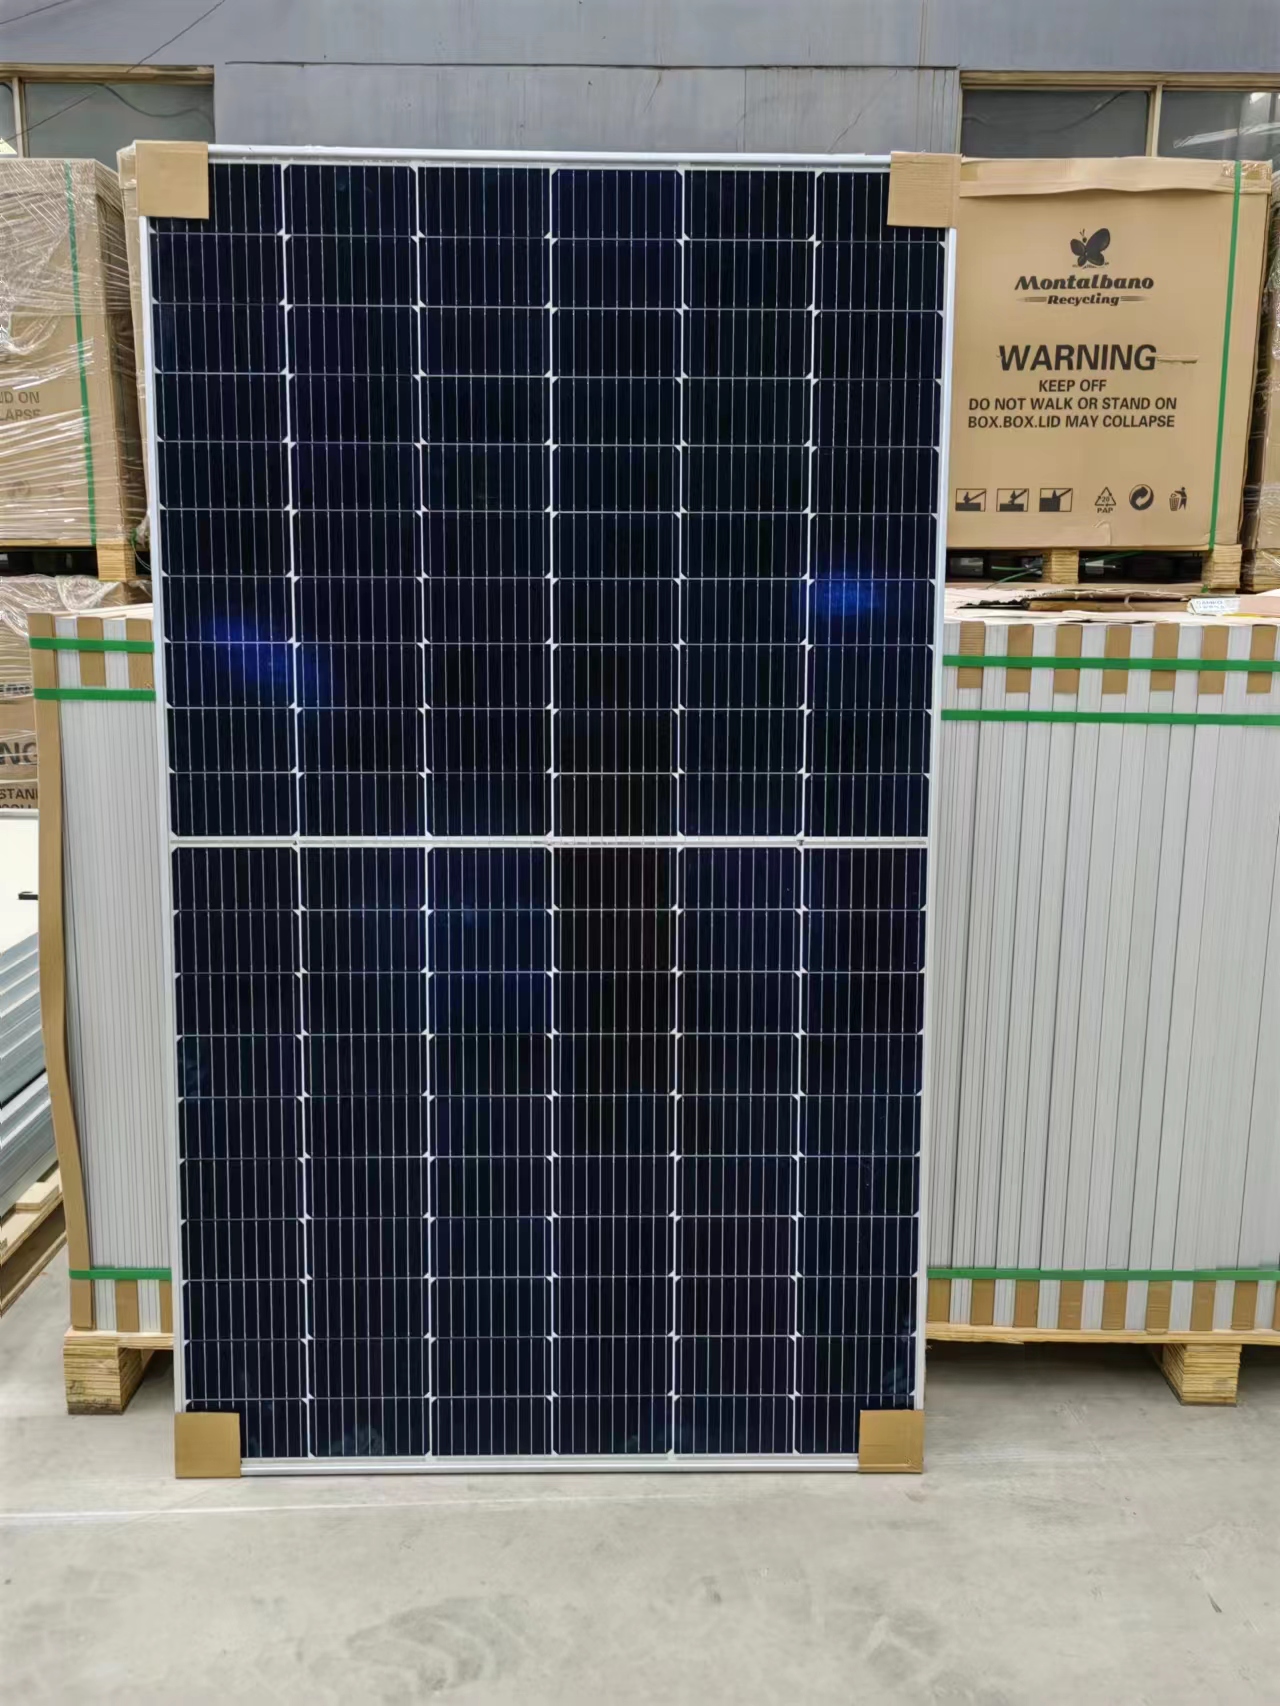 Painel solar de venda quente direta da fábrica 460 W painel solar para sistema solar de telhado uso doméstico